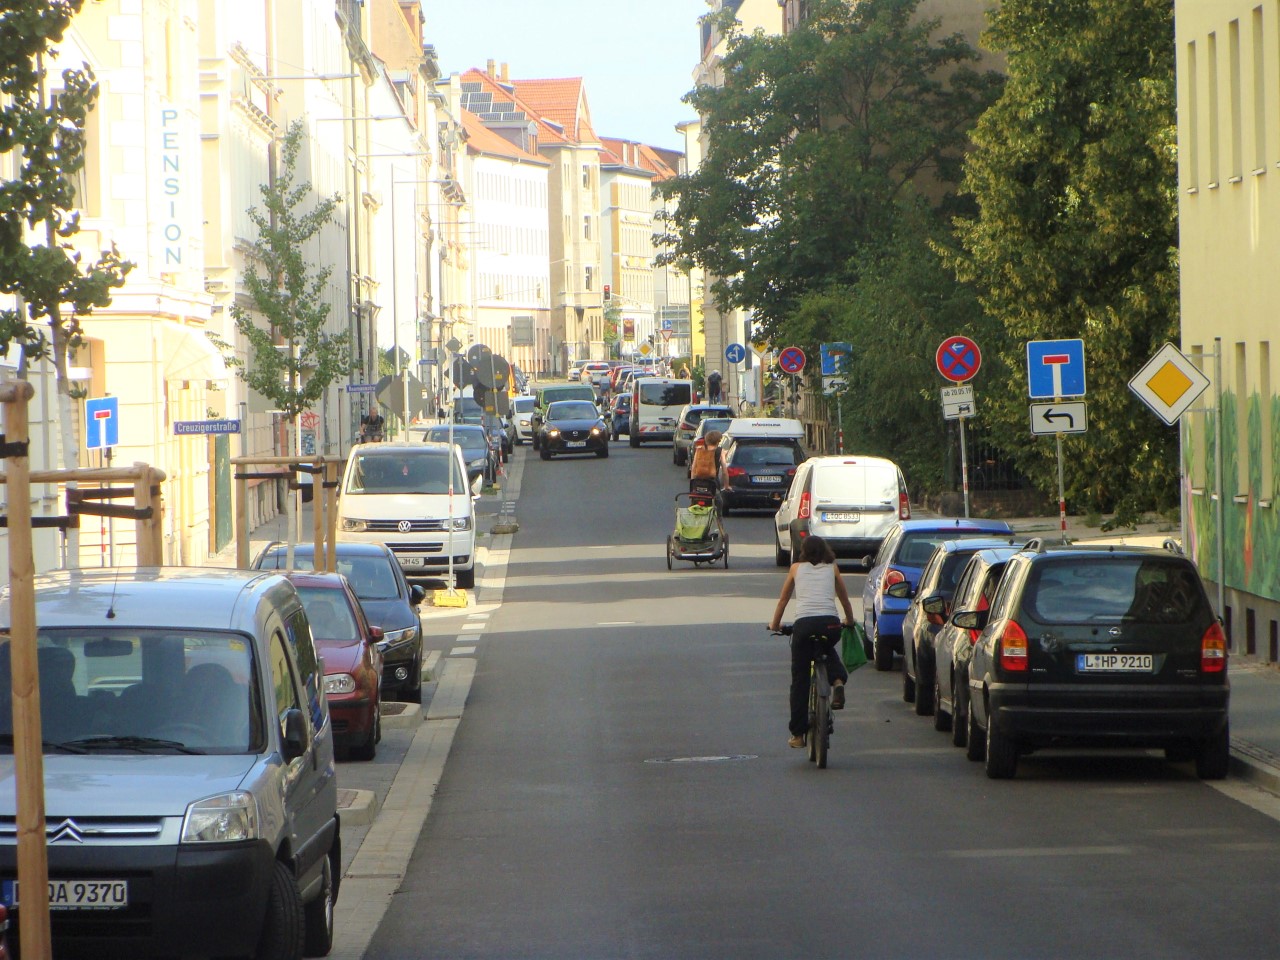 Zoom in die sanierte Gießerstraße mit geparkten Autos links und rachts am Straßenrand, sowie RadfahrerInnen und Autos auf der Fahrbahn